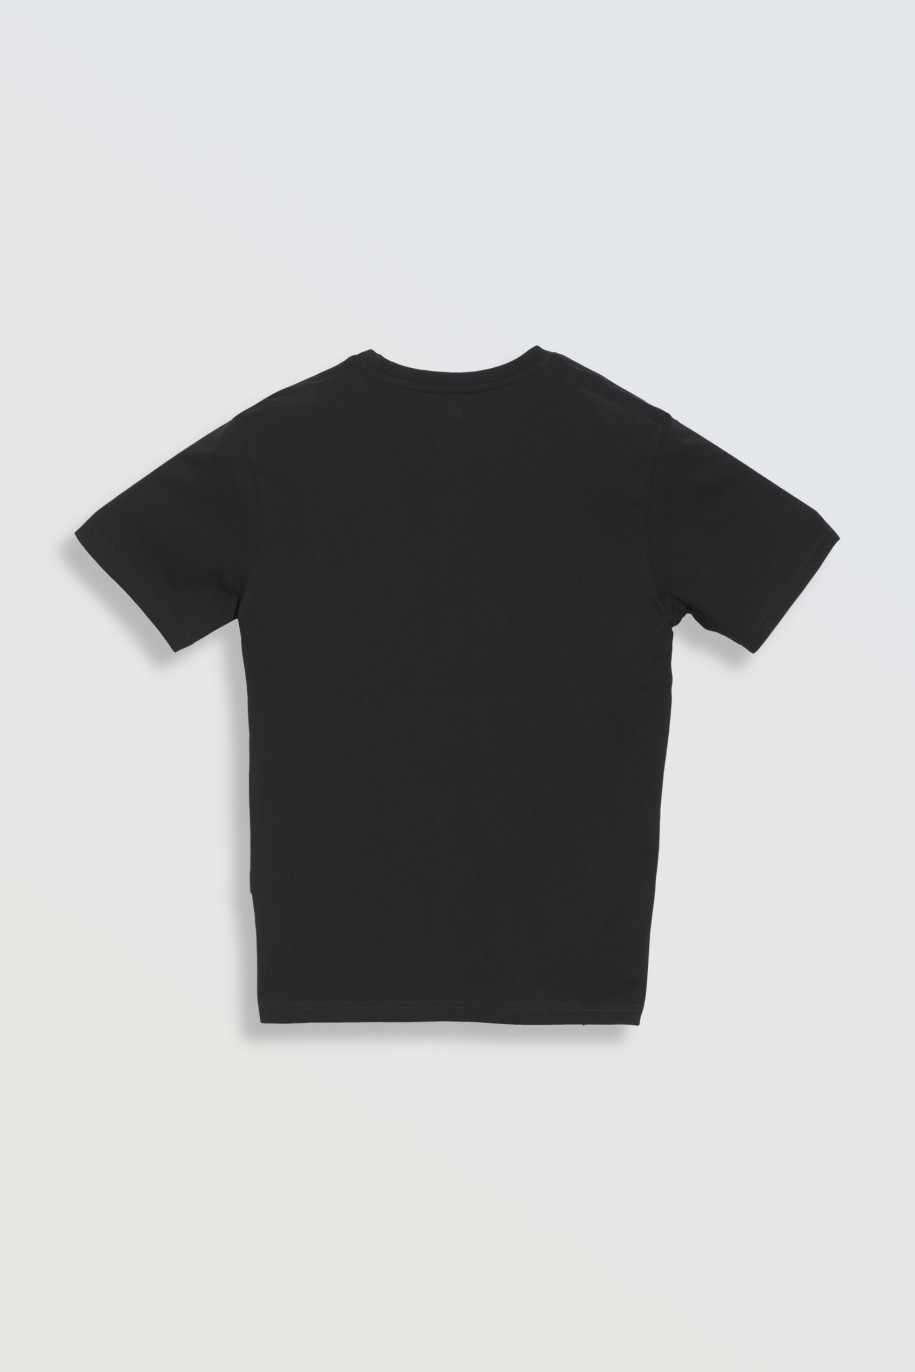 Czarny t-shirt z kolorowym nadrukiem na wysokości piersi - 47075